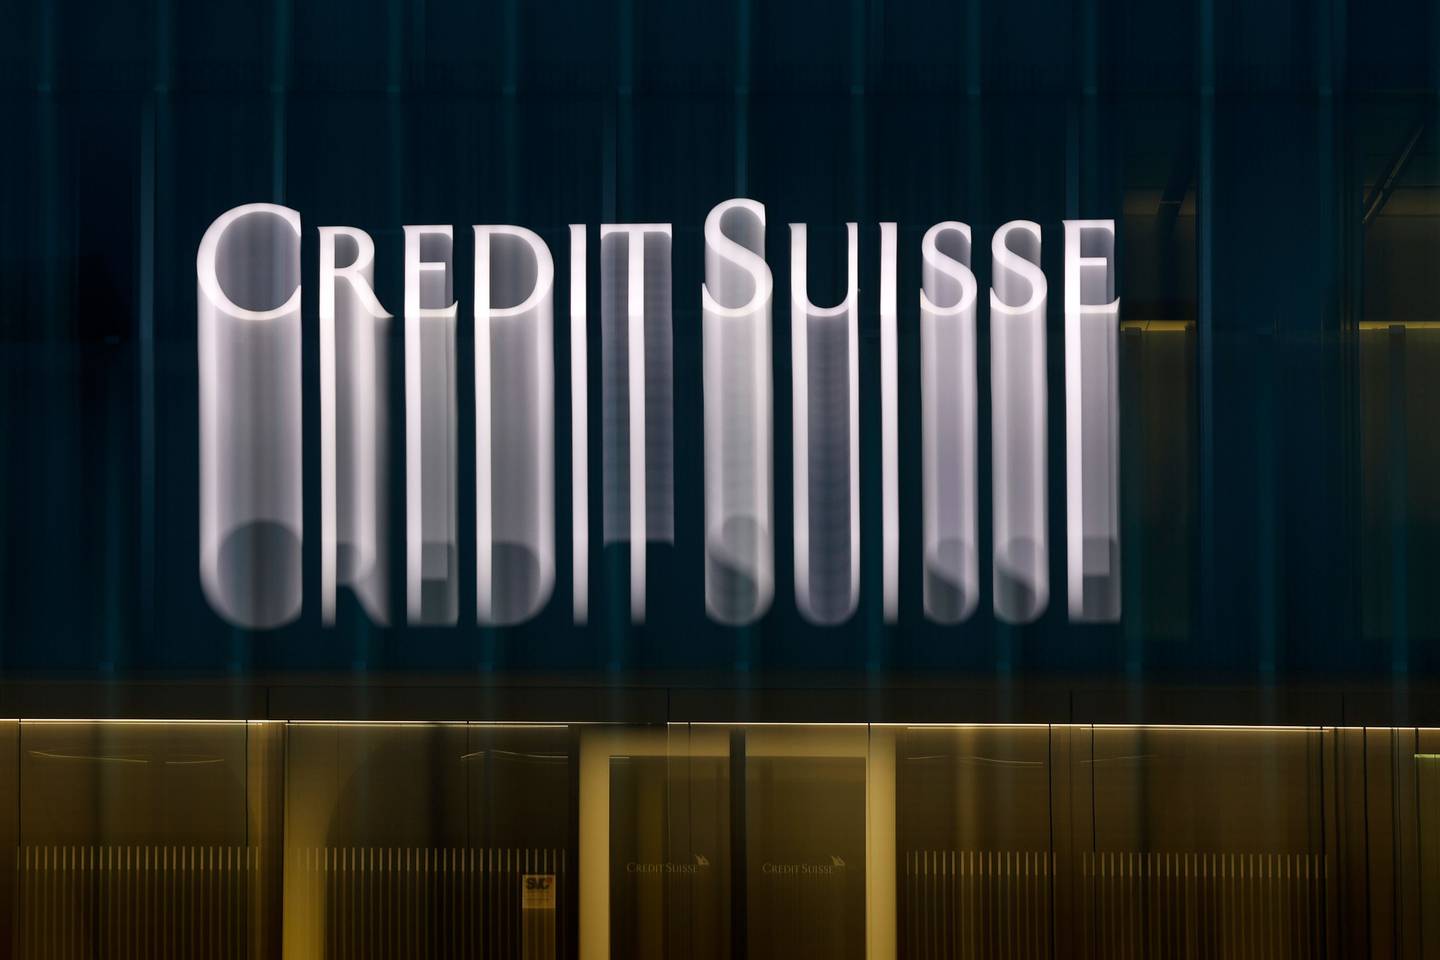 Imagen de una oficina de Credit Suisse